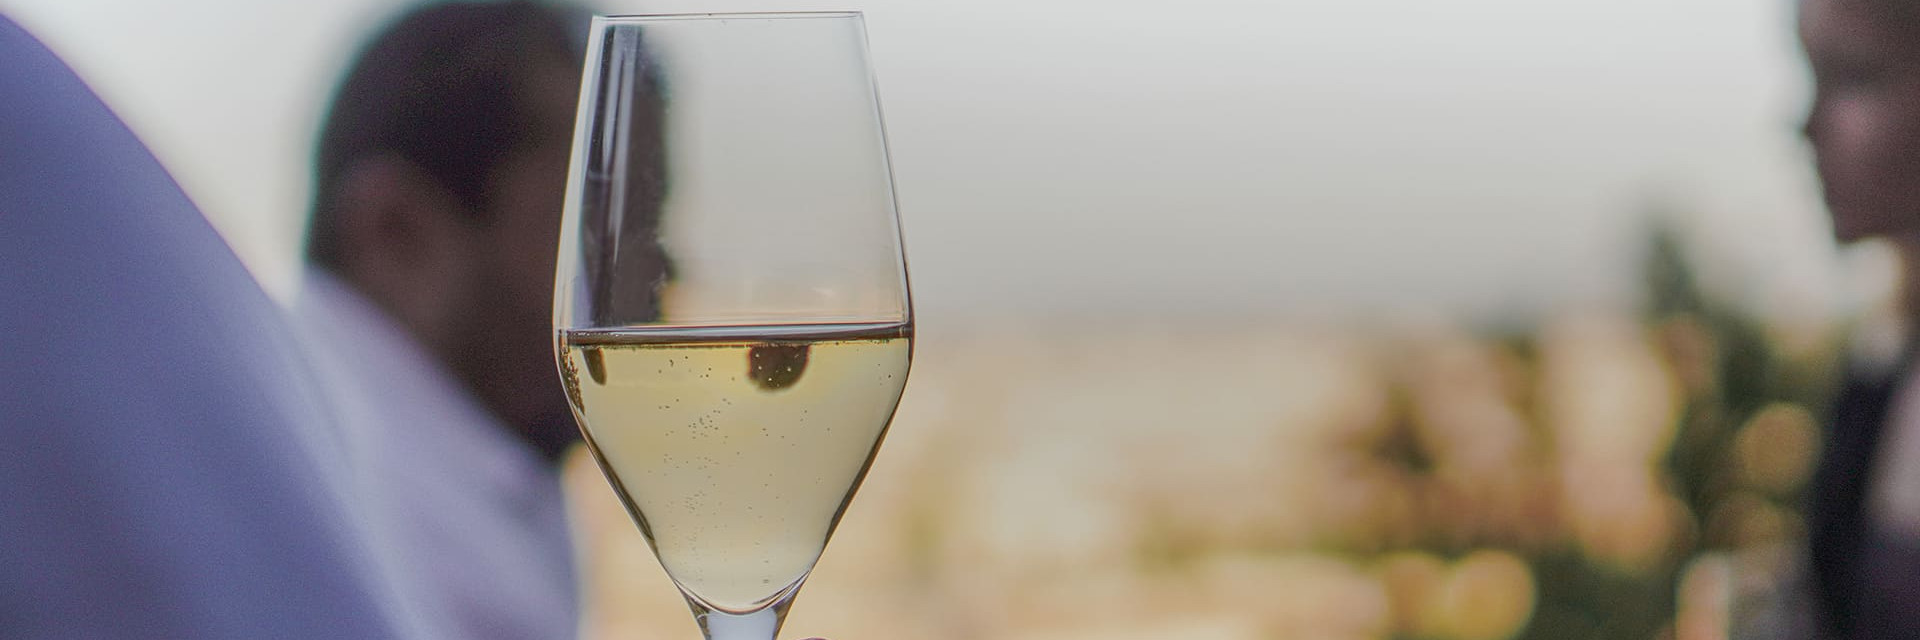 Des moments uniques, comme partager un verre de vin ou de champagne au coucher de soleil en bonne compagnie.